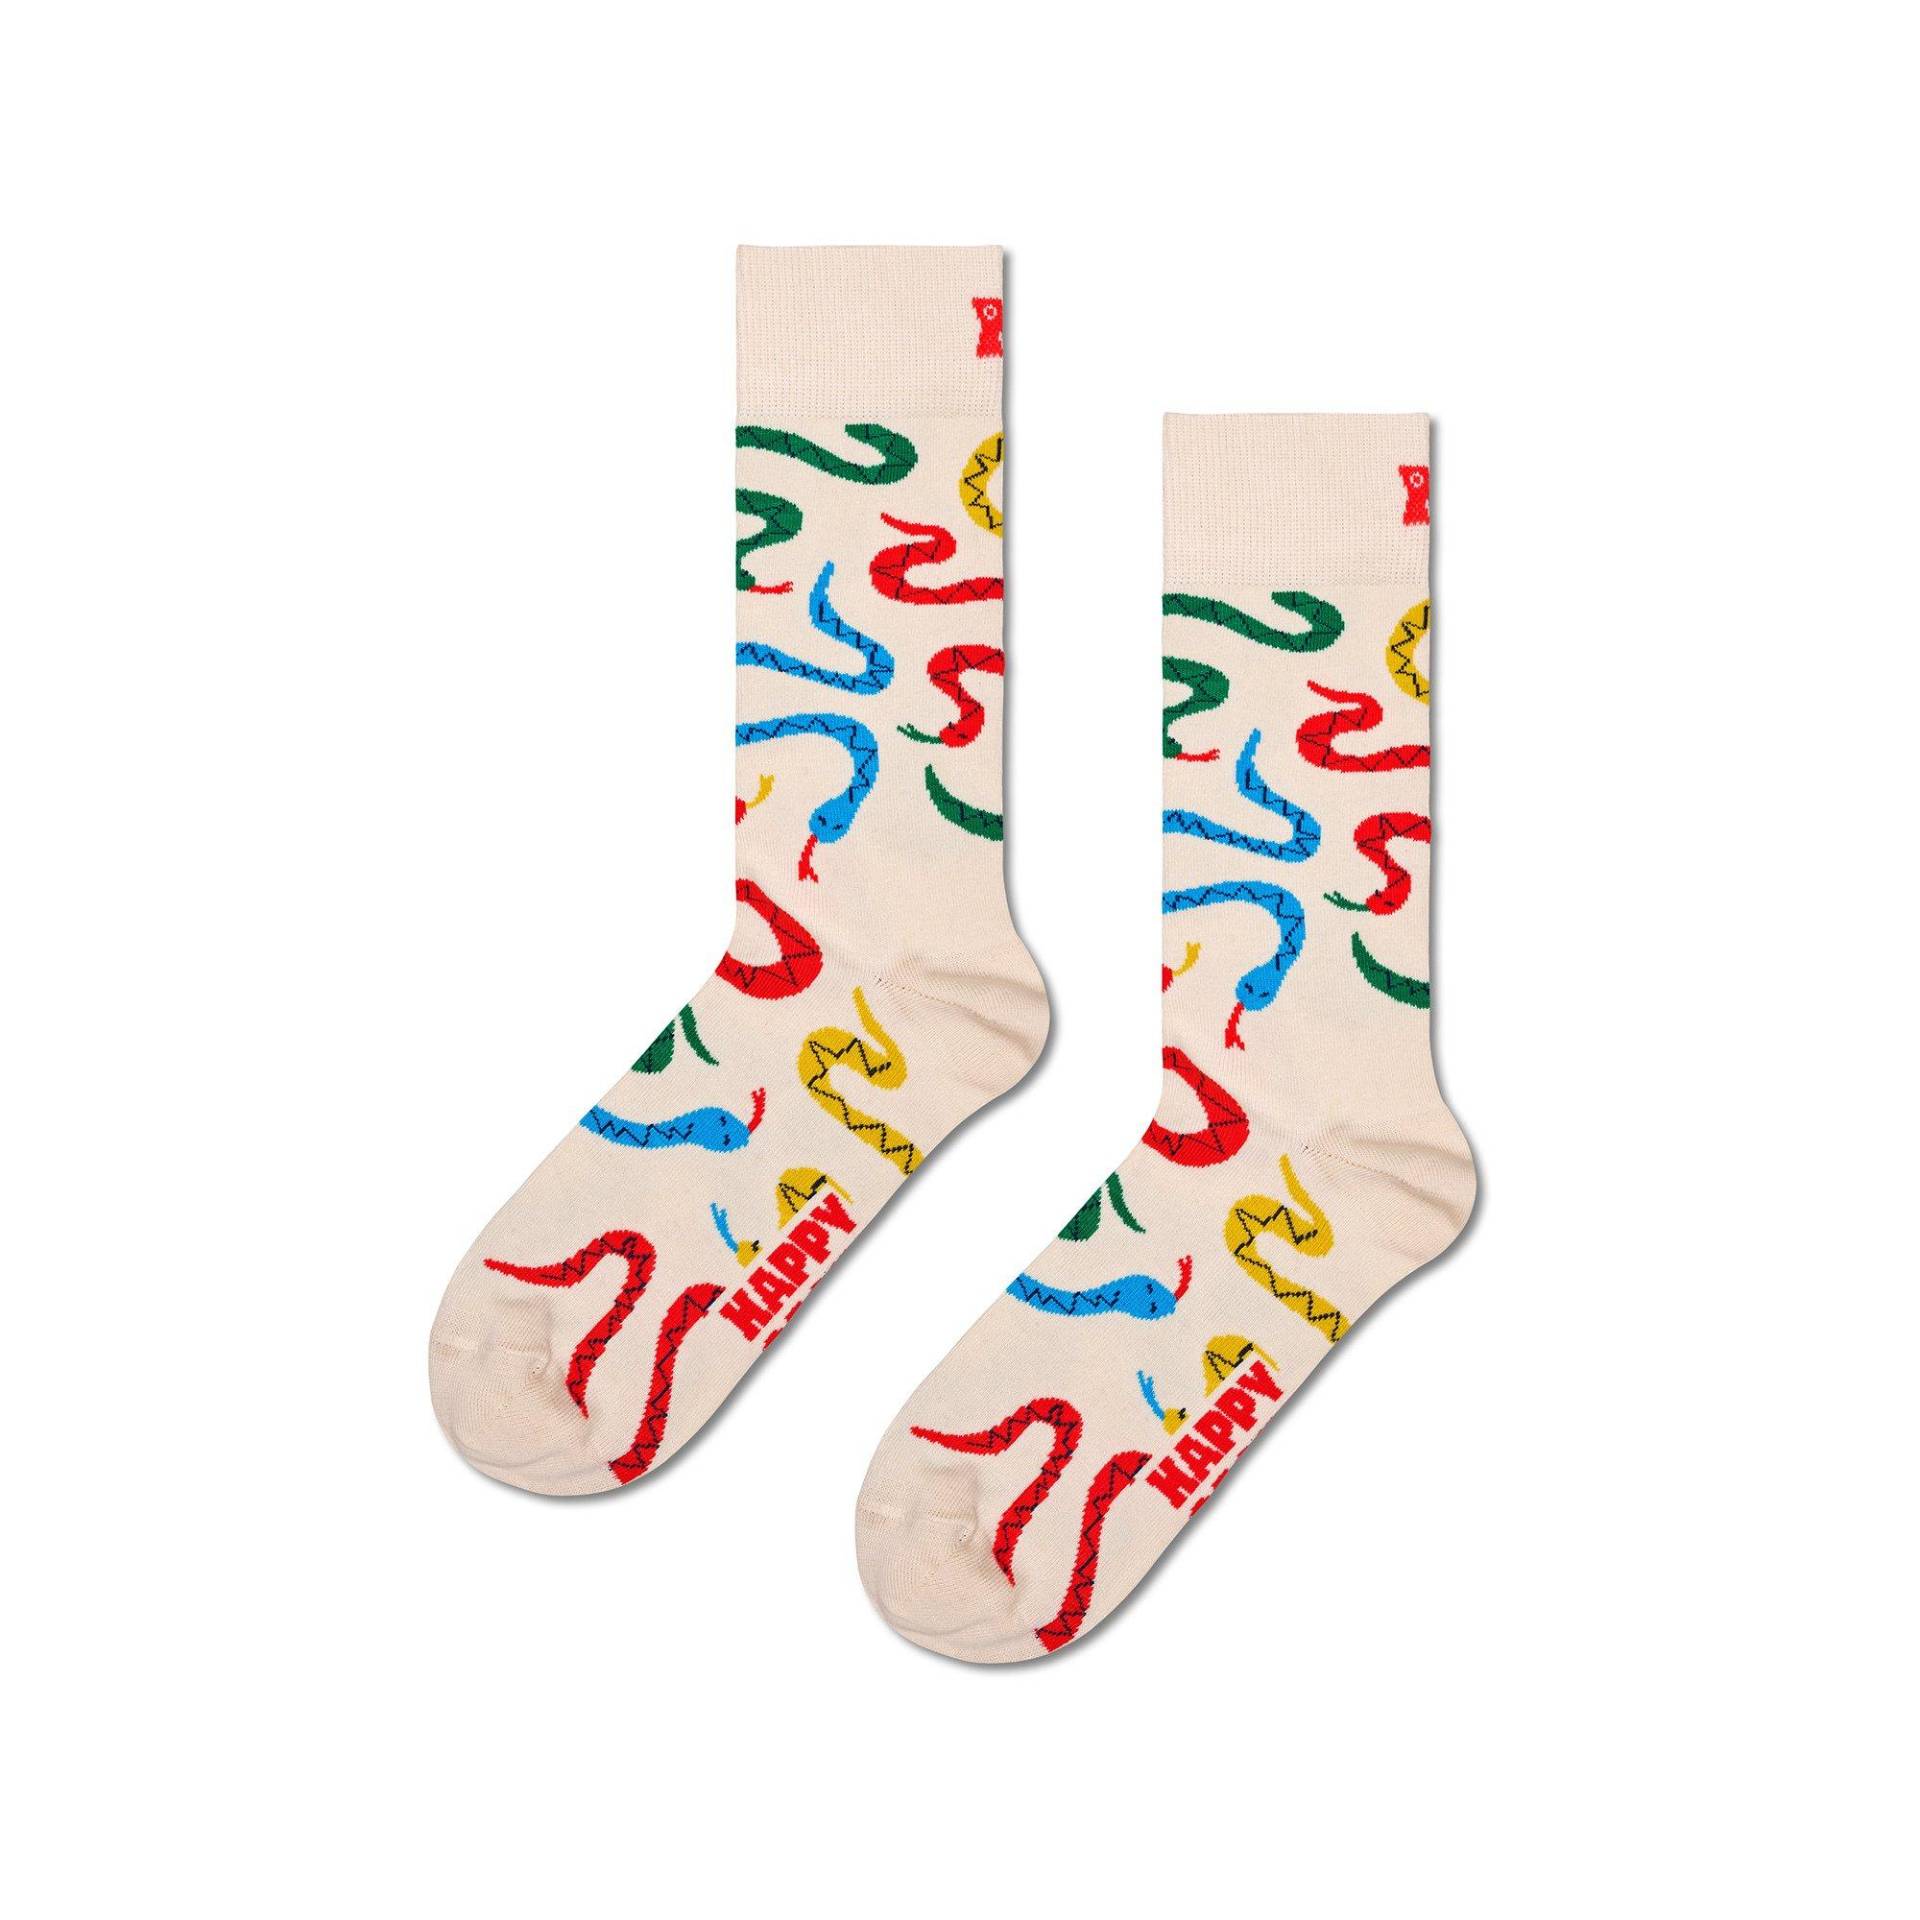 Socken Damen Weiss 36-40 von Happy Socks